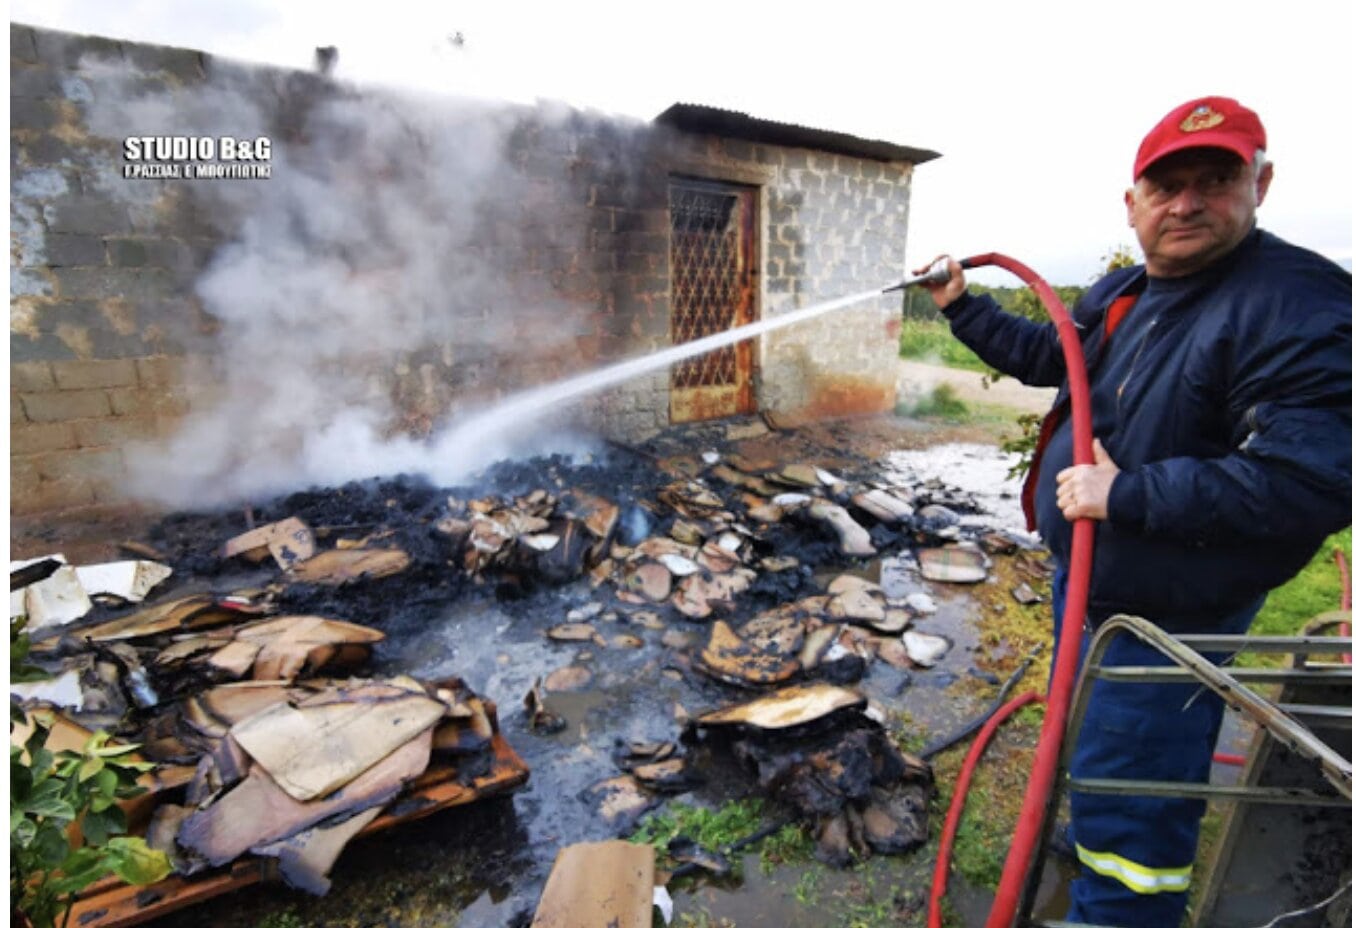 ΒΡΑΖΕΙ Η ΑΡΓΟΛΙΔΑ: Μεθυσμένος ΛΑΘΡΟ έκαψε περιουσία Έλληνα επειδή του ζητούσε να φύγει… [ΦΩΤΟ]